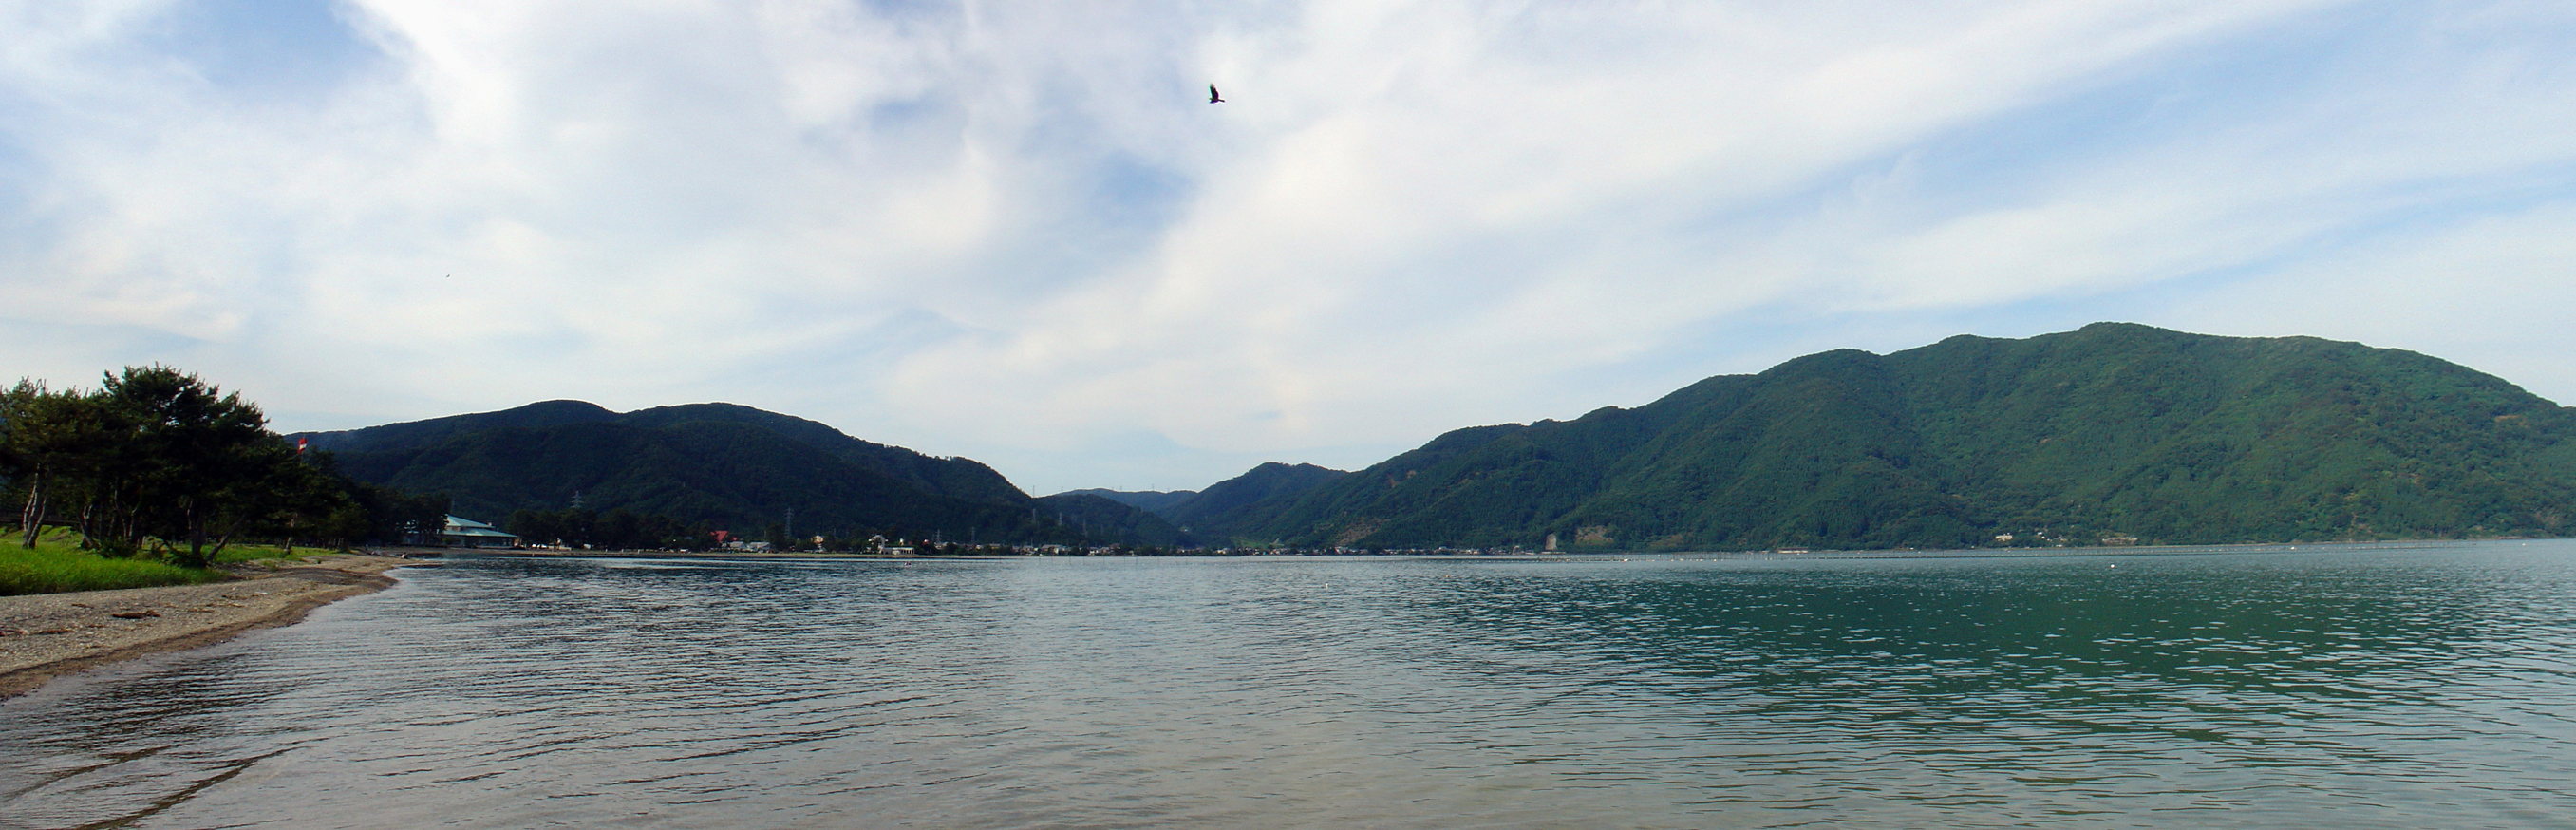 Biwa Lake (琵琶湖) panorama III